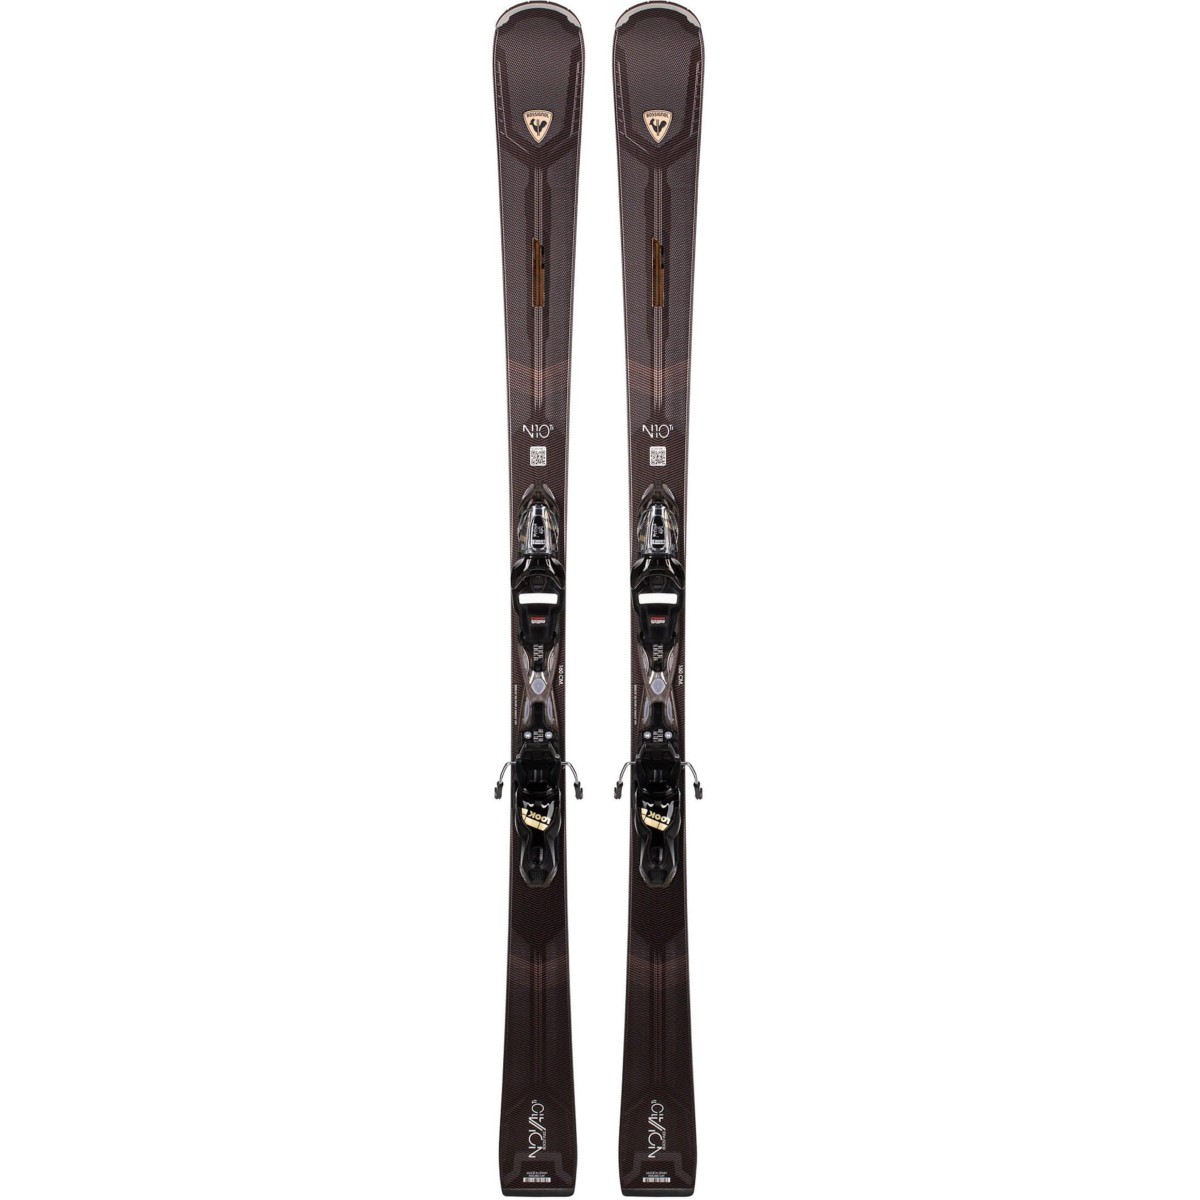 ROSSIGNOL NOVA 10 TI XP11 alpine skis